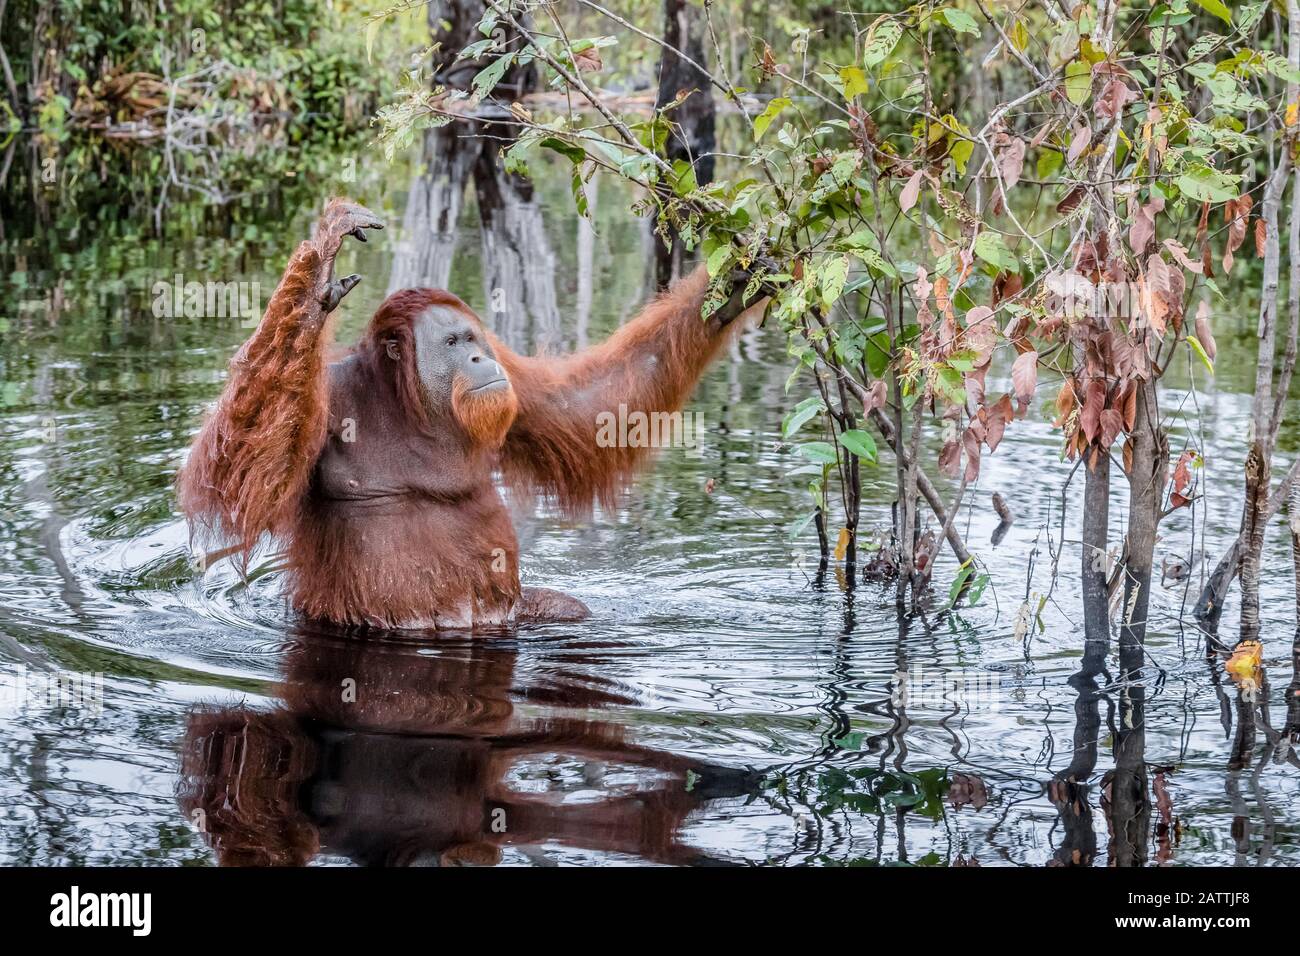 wild male Bornean orangutan, Pongo pygmaeus, on the Buluh Kecil River, Borneo, Indonesia Stock Photo